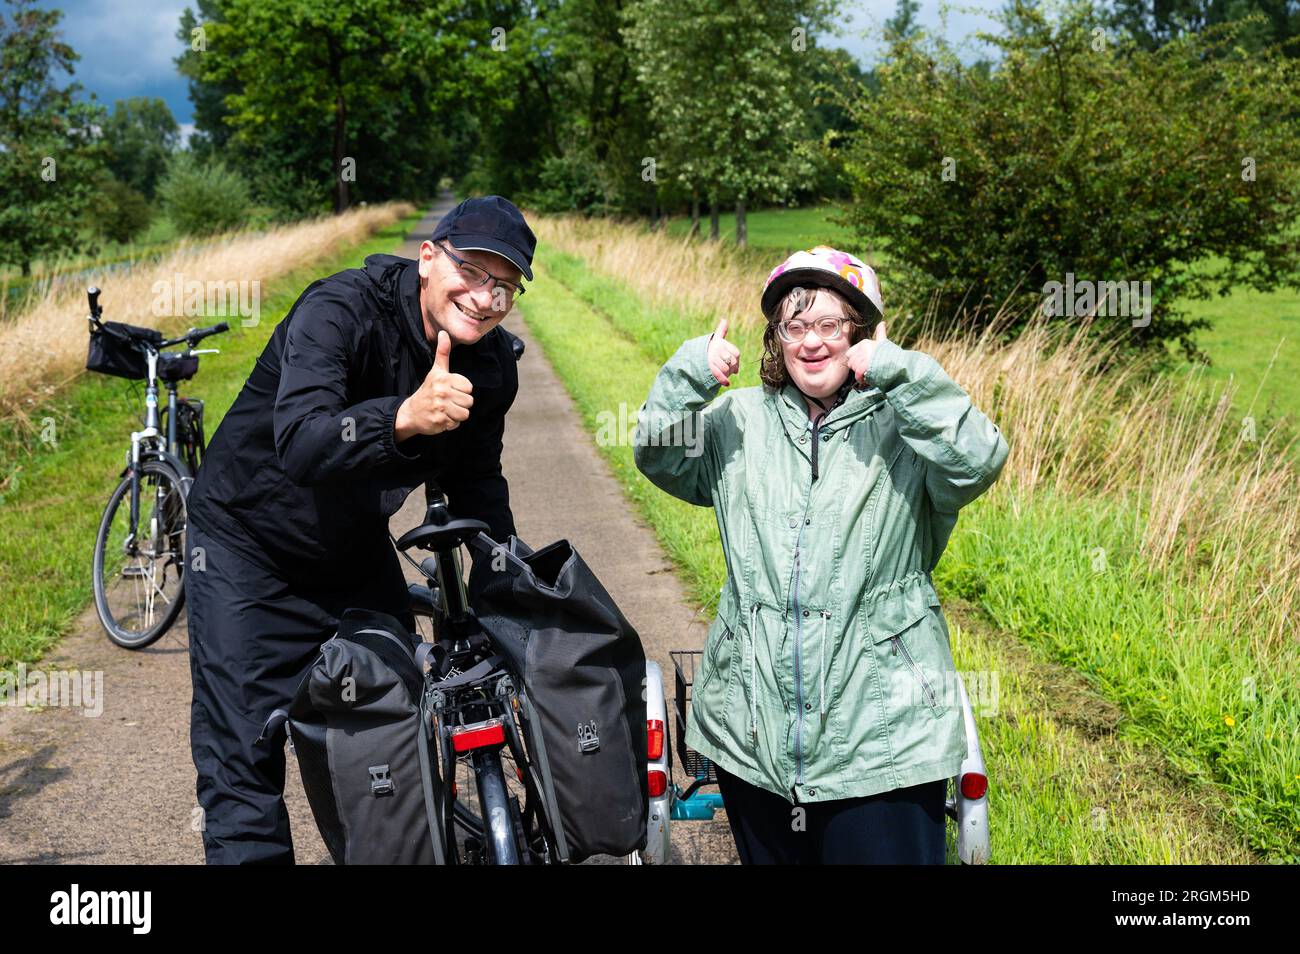 Retrato del síndrome de Down hombre adulto con bicicleta al aire libre en  la calle.: fotografía de stock © halfpoint #425594744